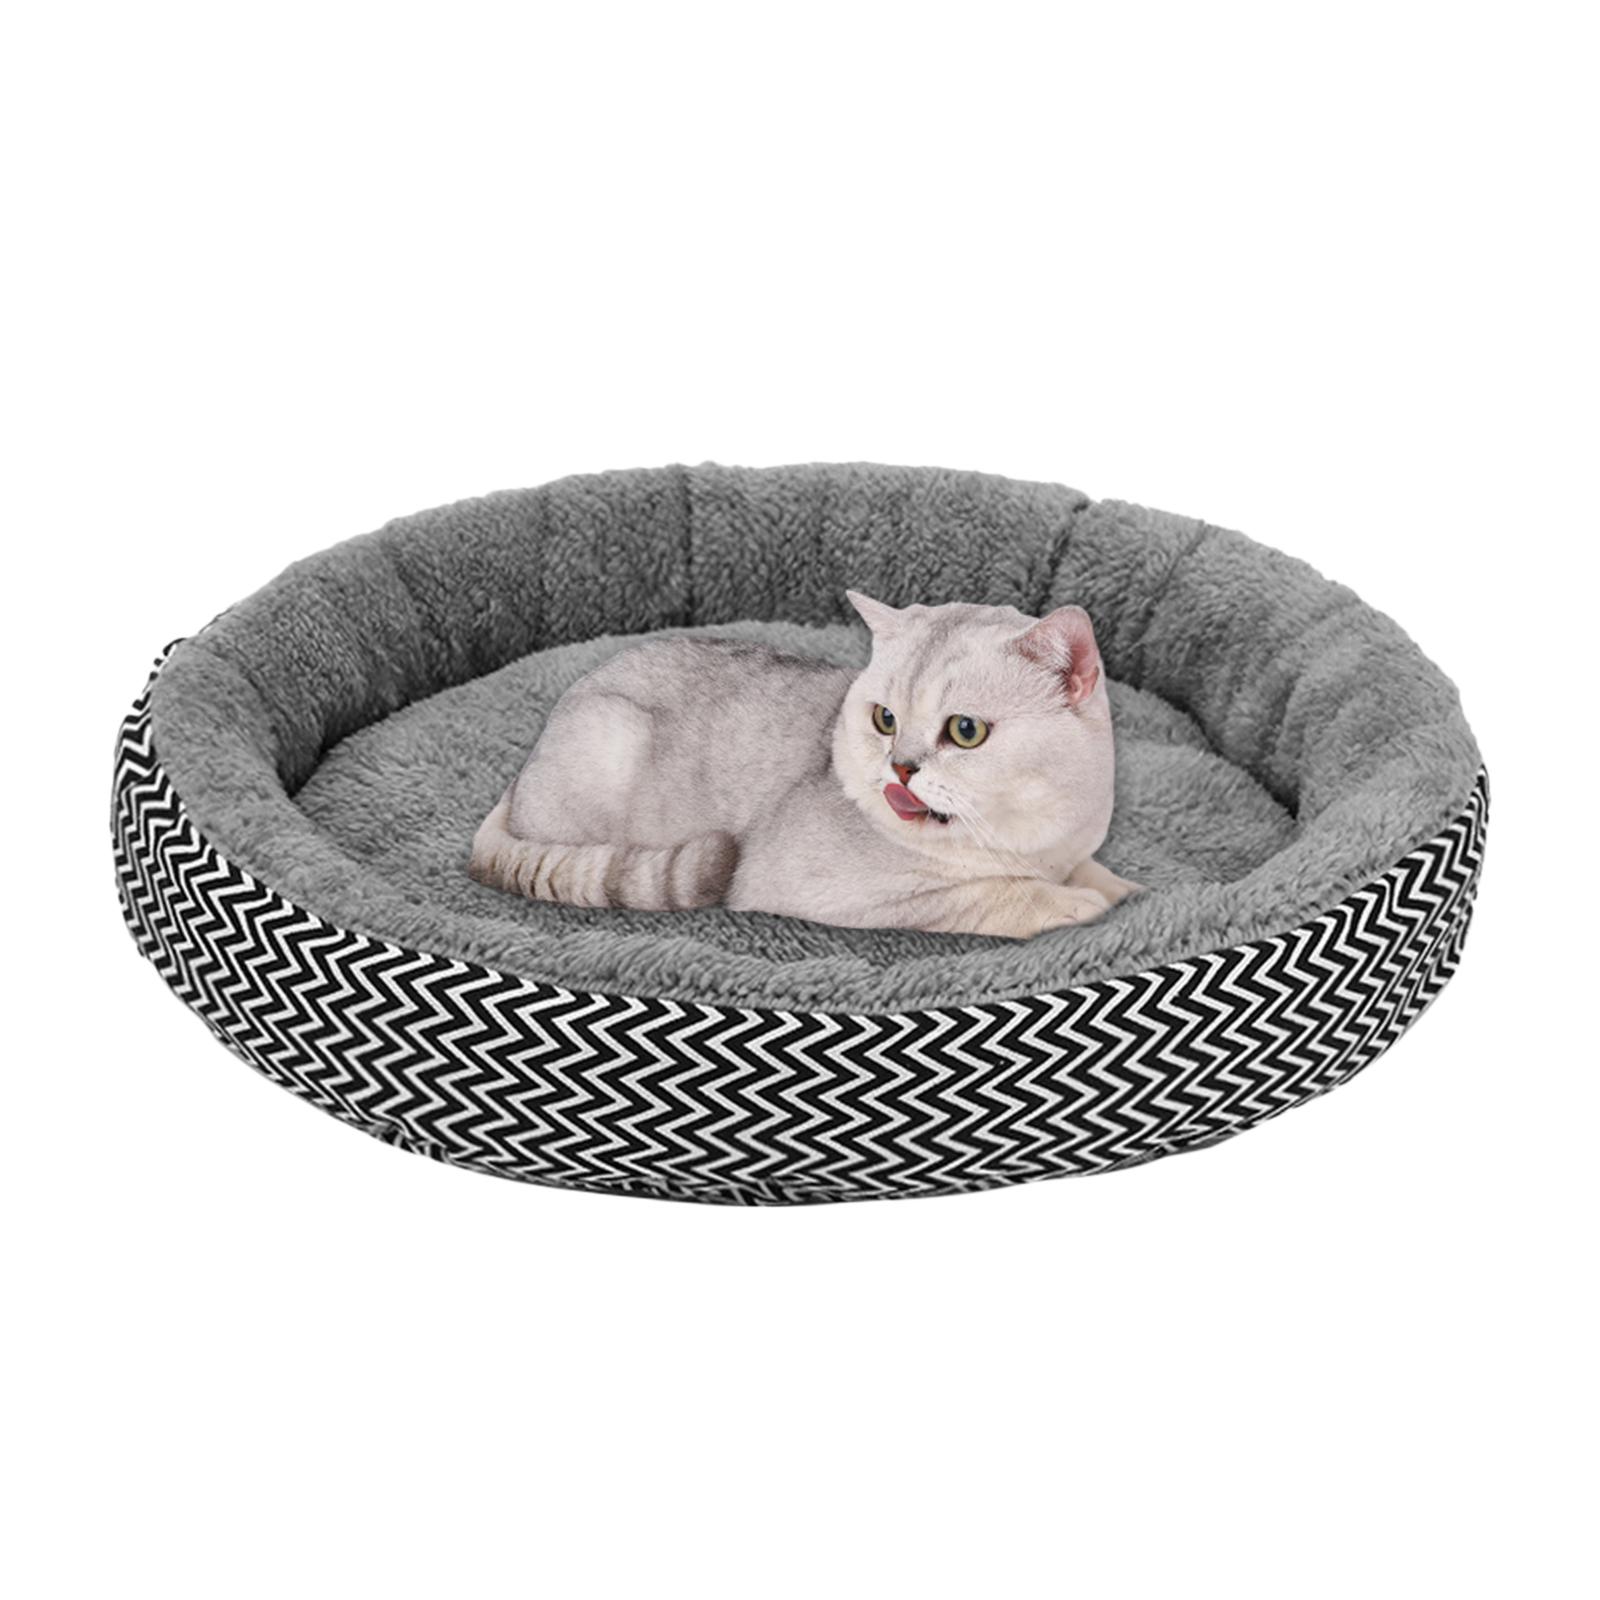 Pet Cat Bed Washable Cushion Pad Fleece House Kennel Basket Pets Supplies Dia. 34cm